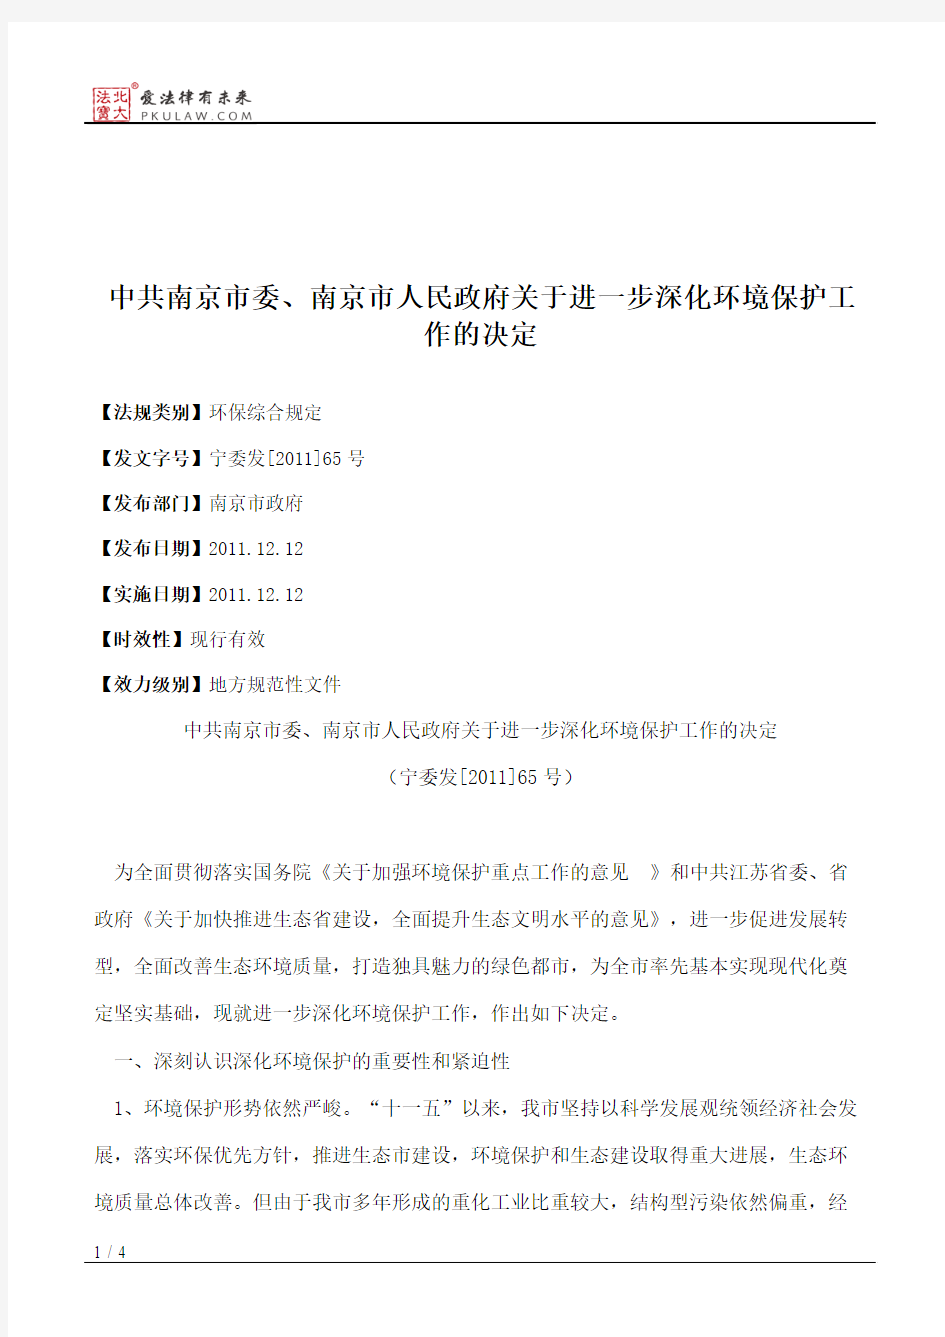 中共南京市委、南京市人民政府关于进一步深化环境保护工作的决定